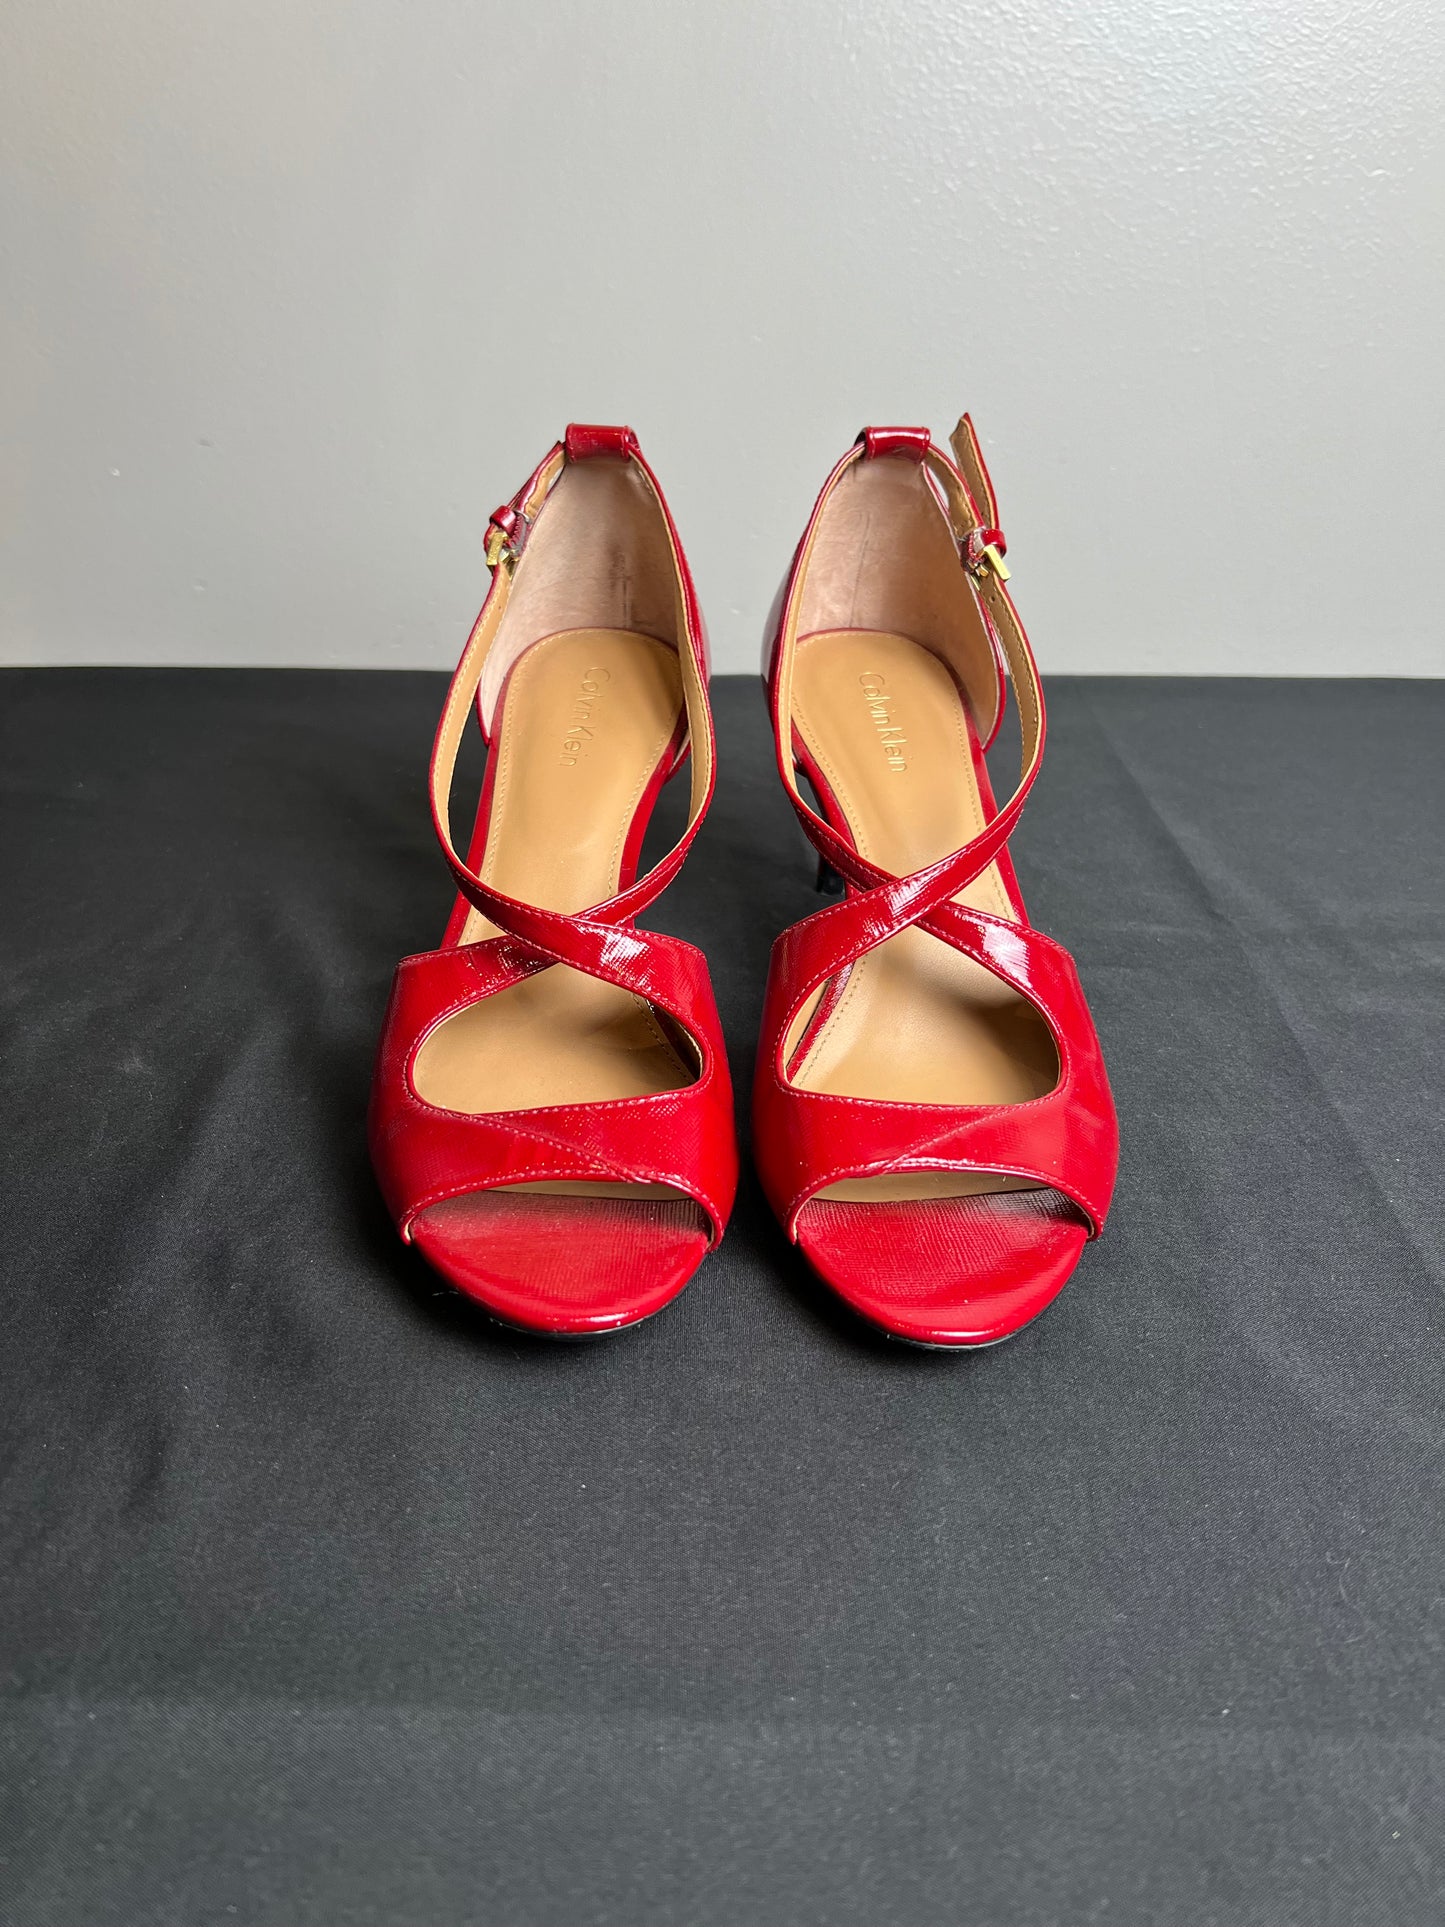 Sandals Heels Stiletto By Calvin Klein  Size: 7